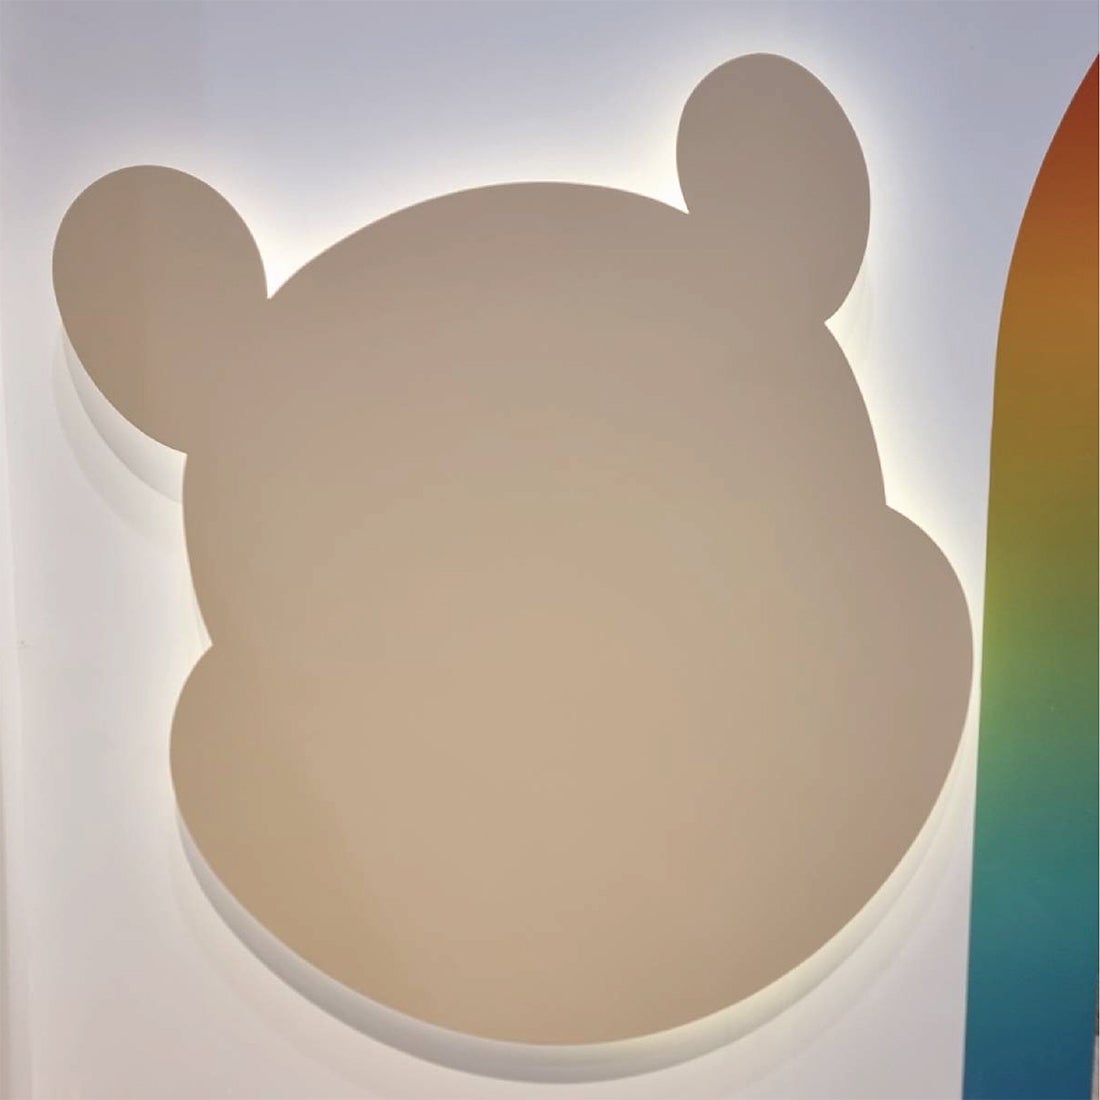 ผนังประดับแขวน Disneyhome รูปทรง Winnie the pooh สีเนเชอรัล